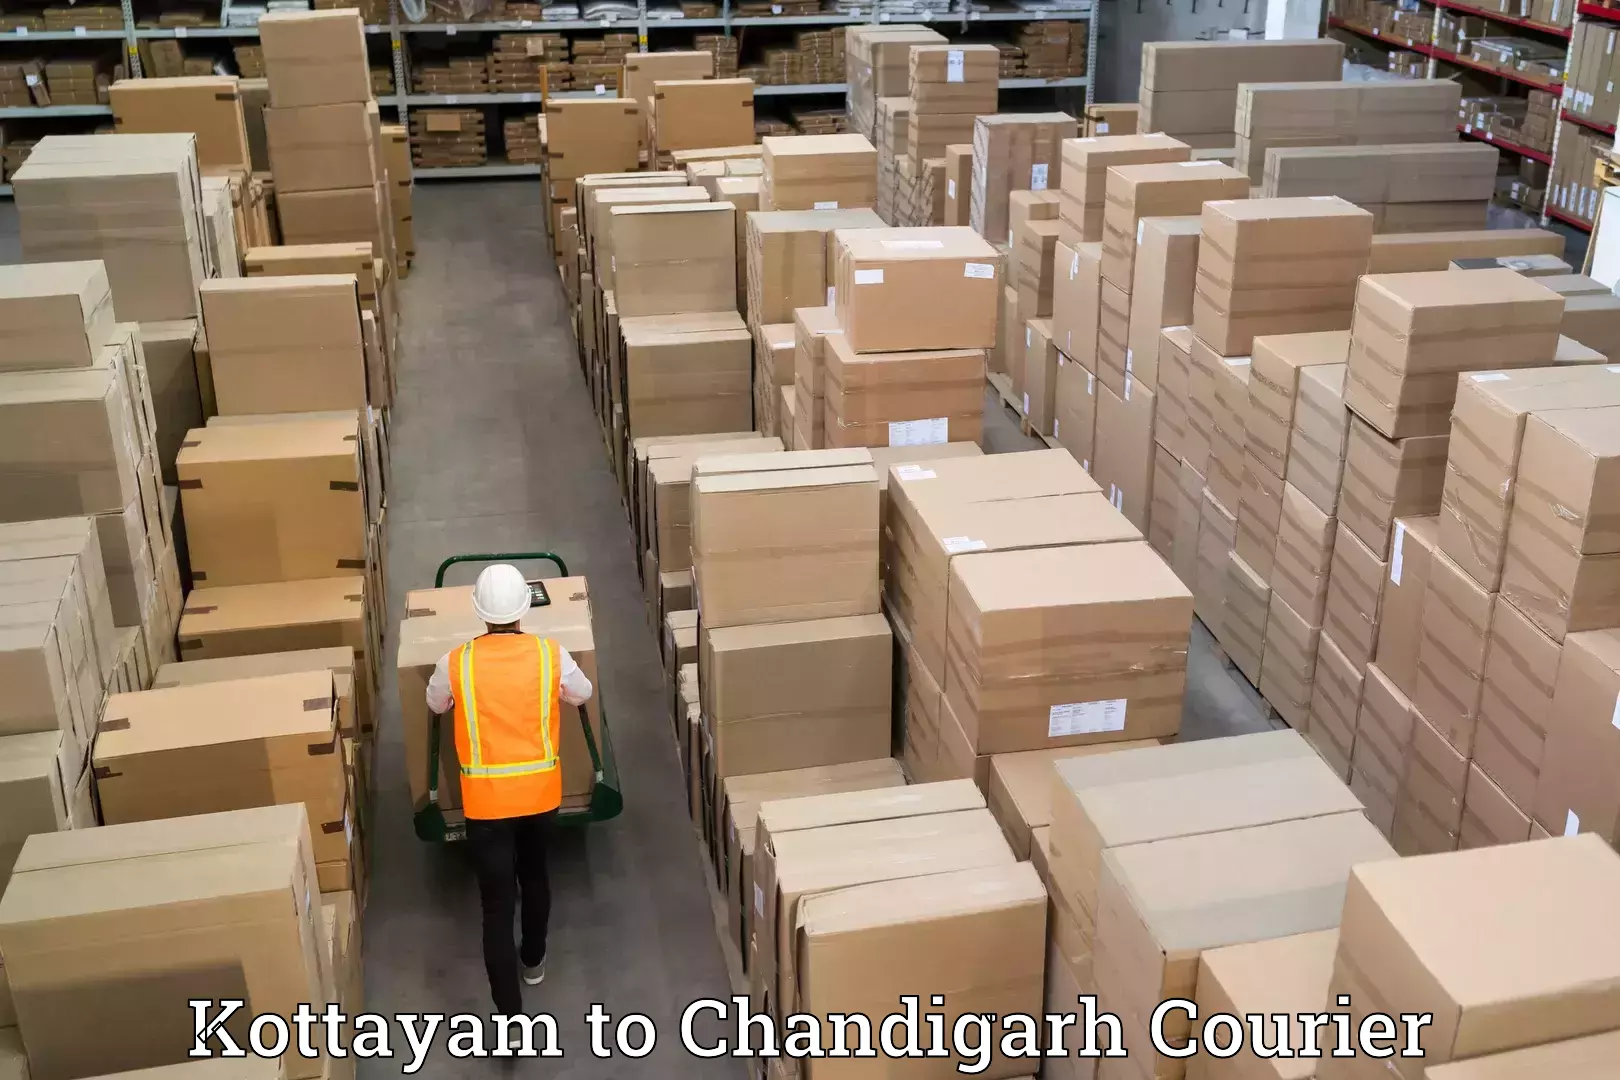 Home shifting experts Kottayam to Chandigarh